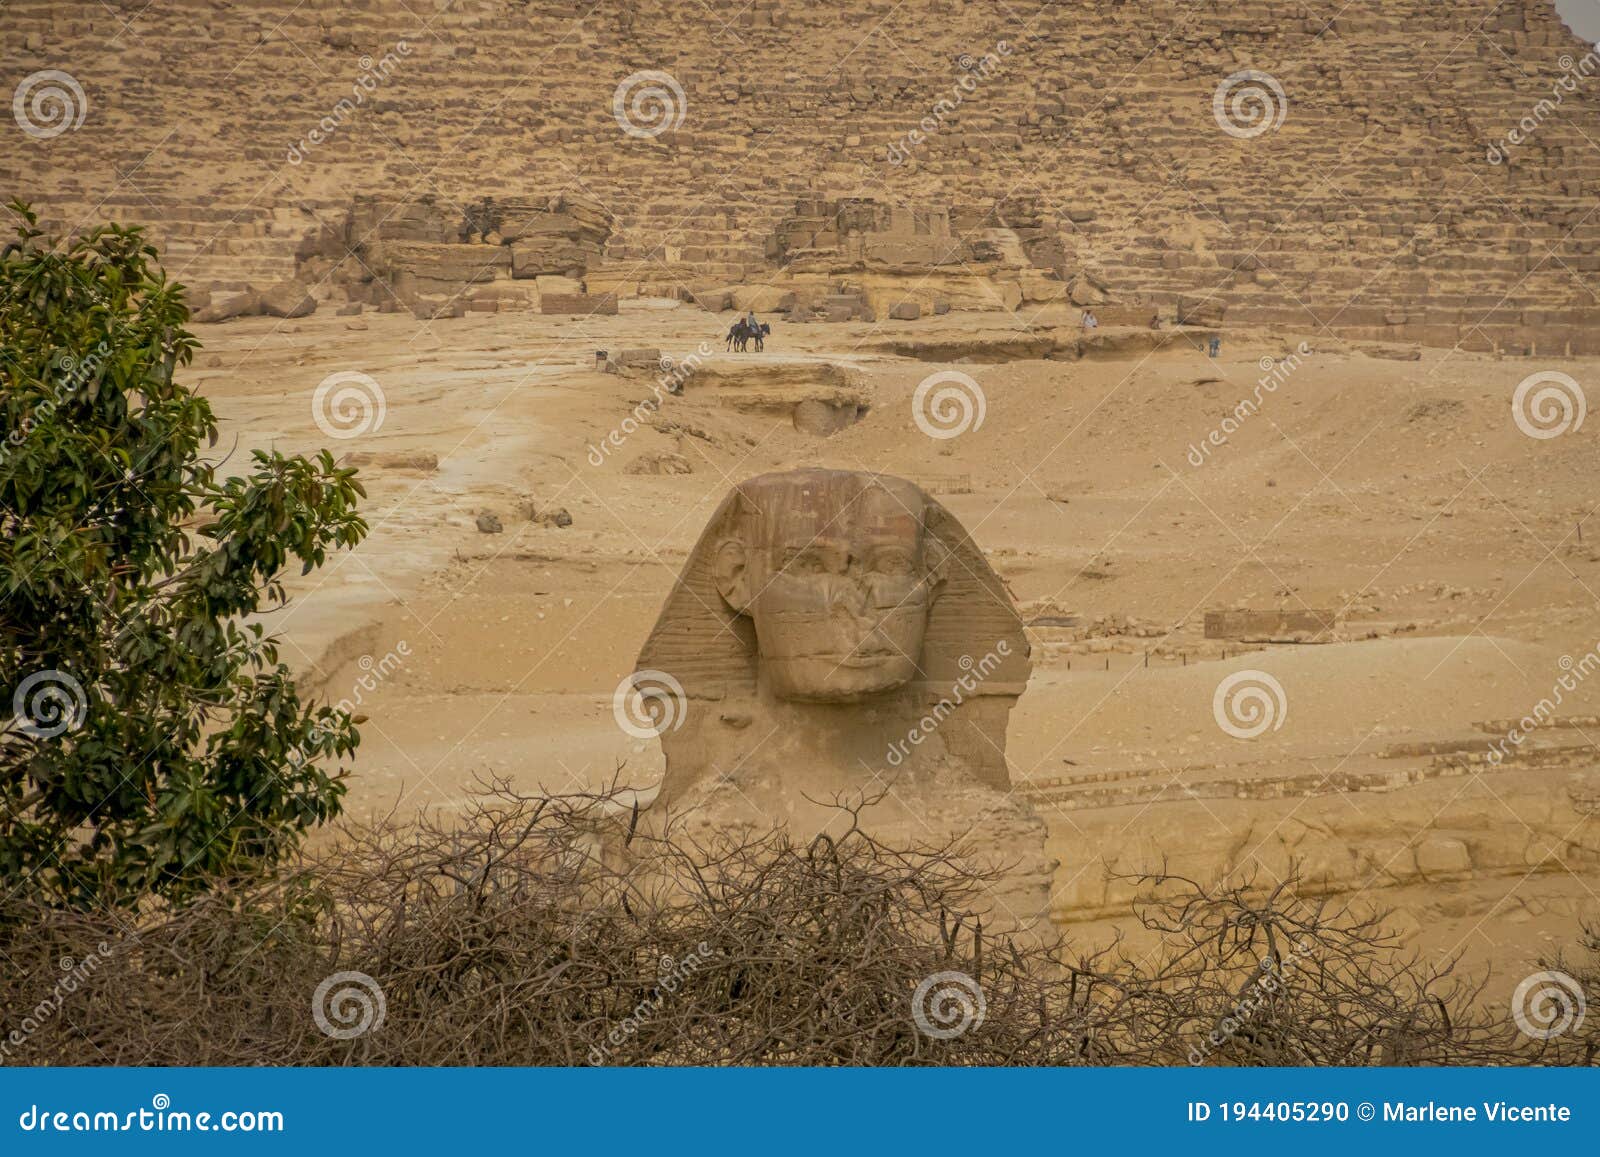 gran esfinge de guiza. el cairo. egipto